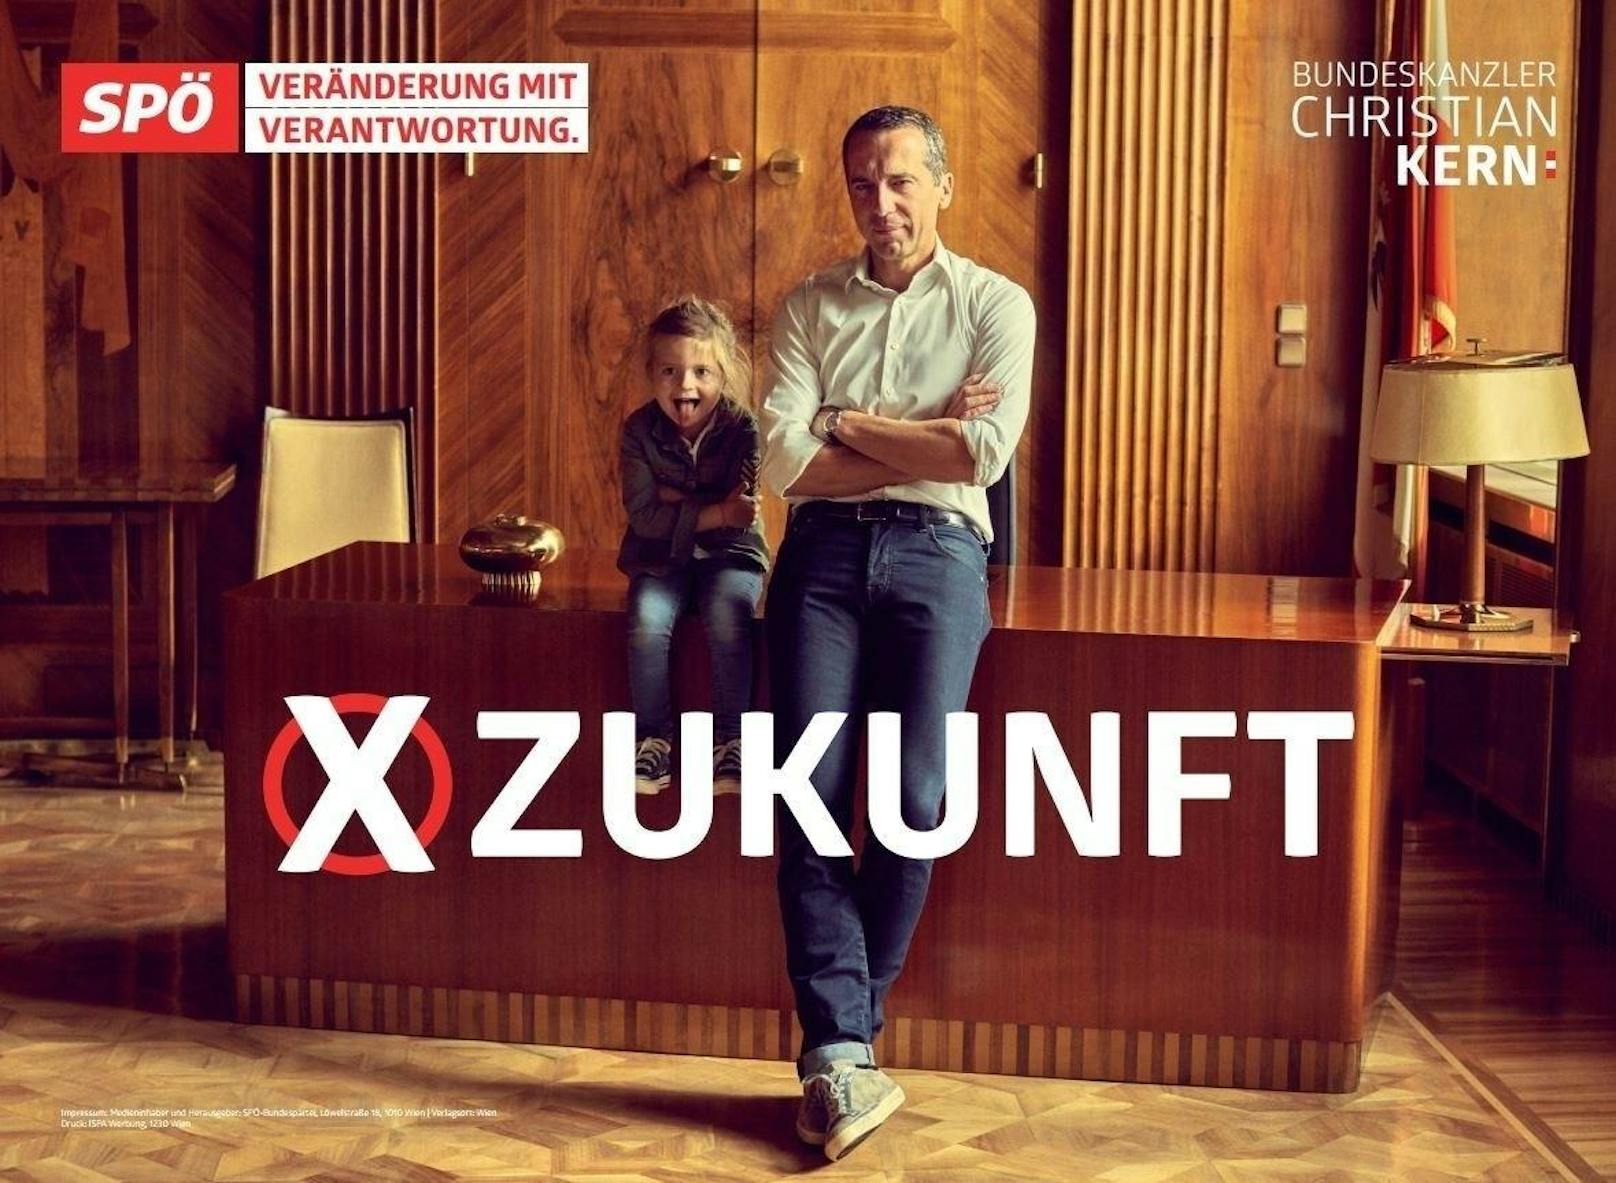 Die neuen Plakate der SPÖ.